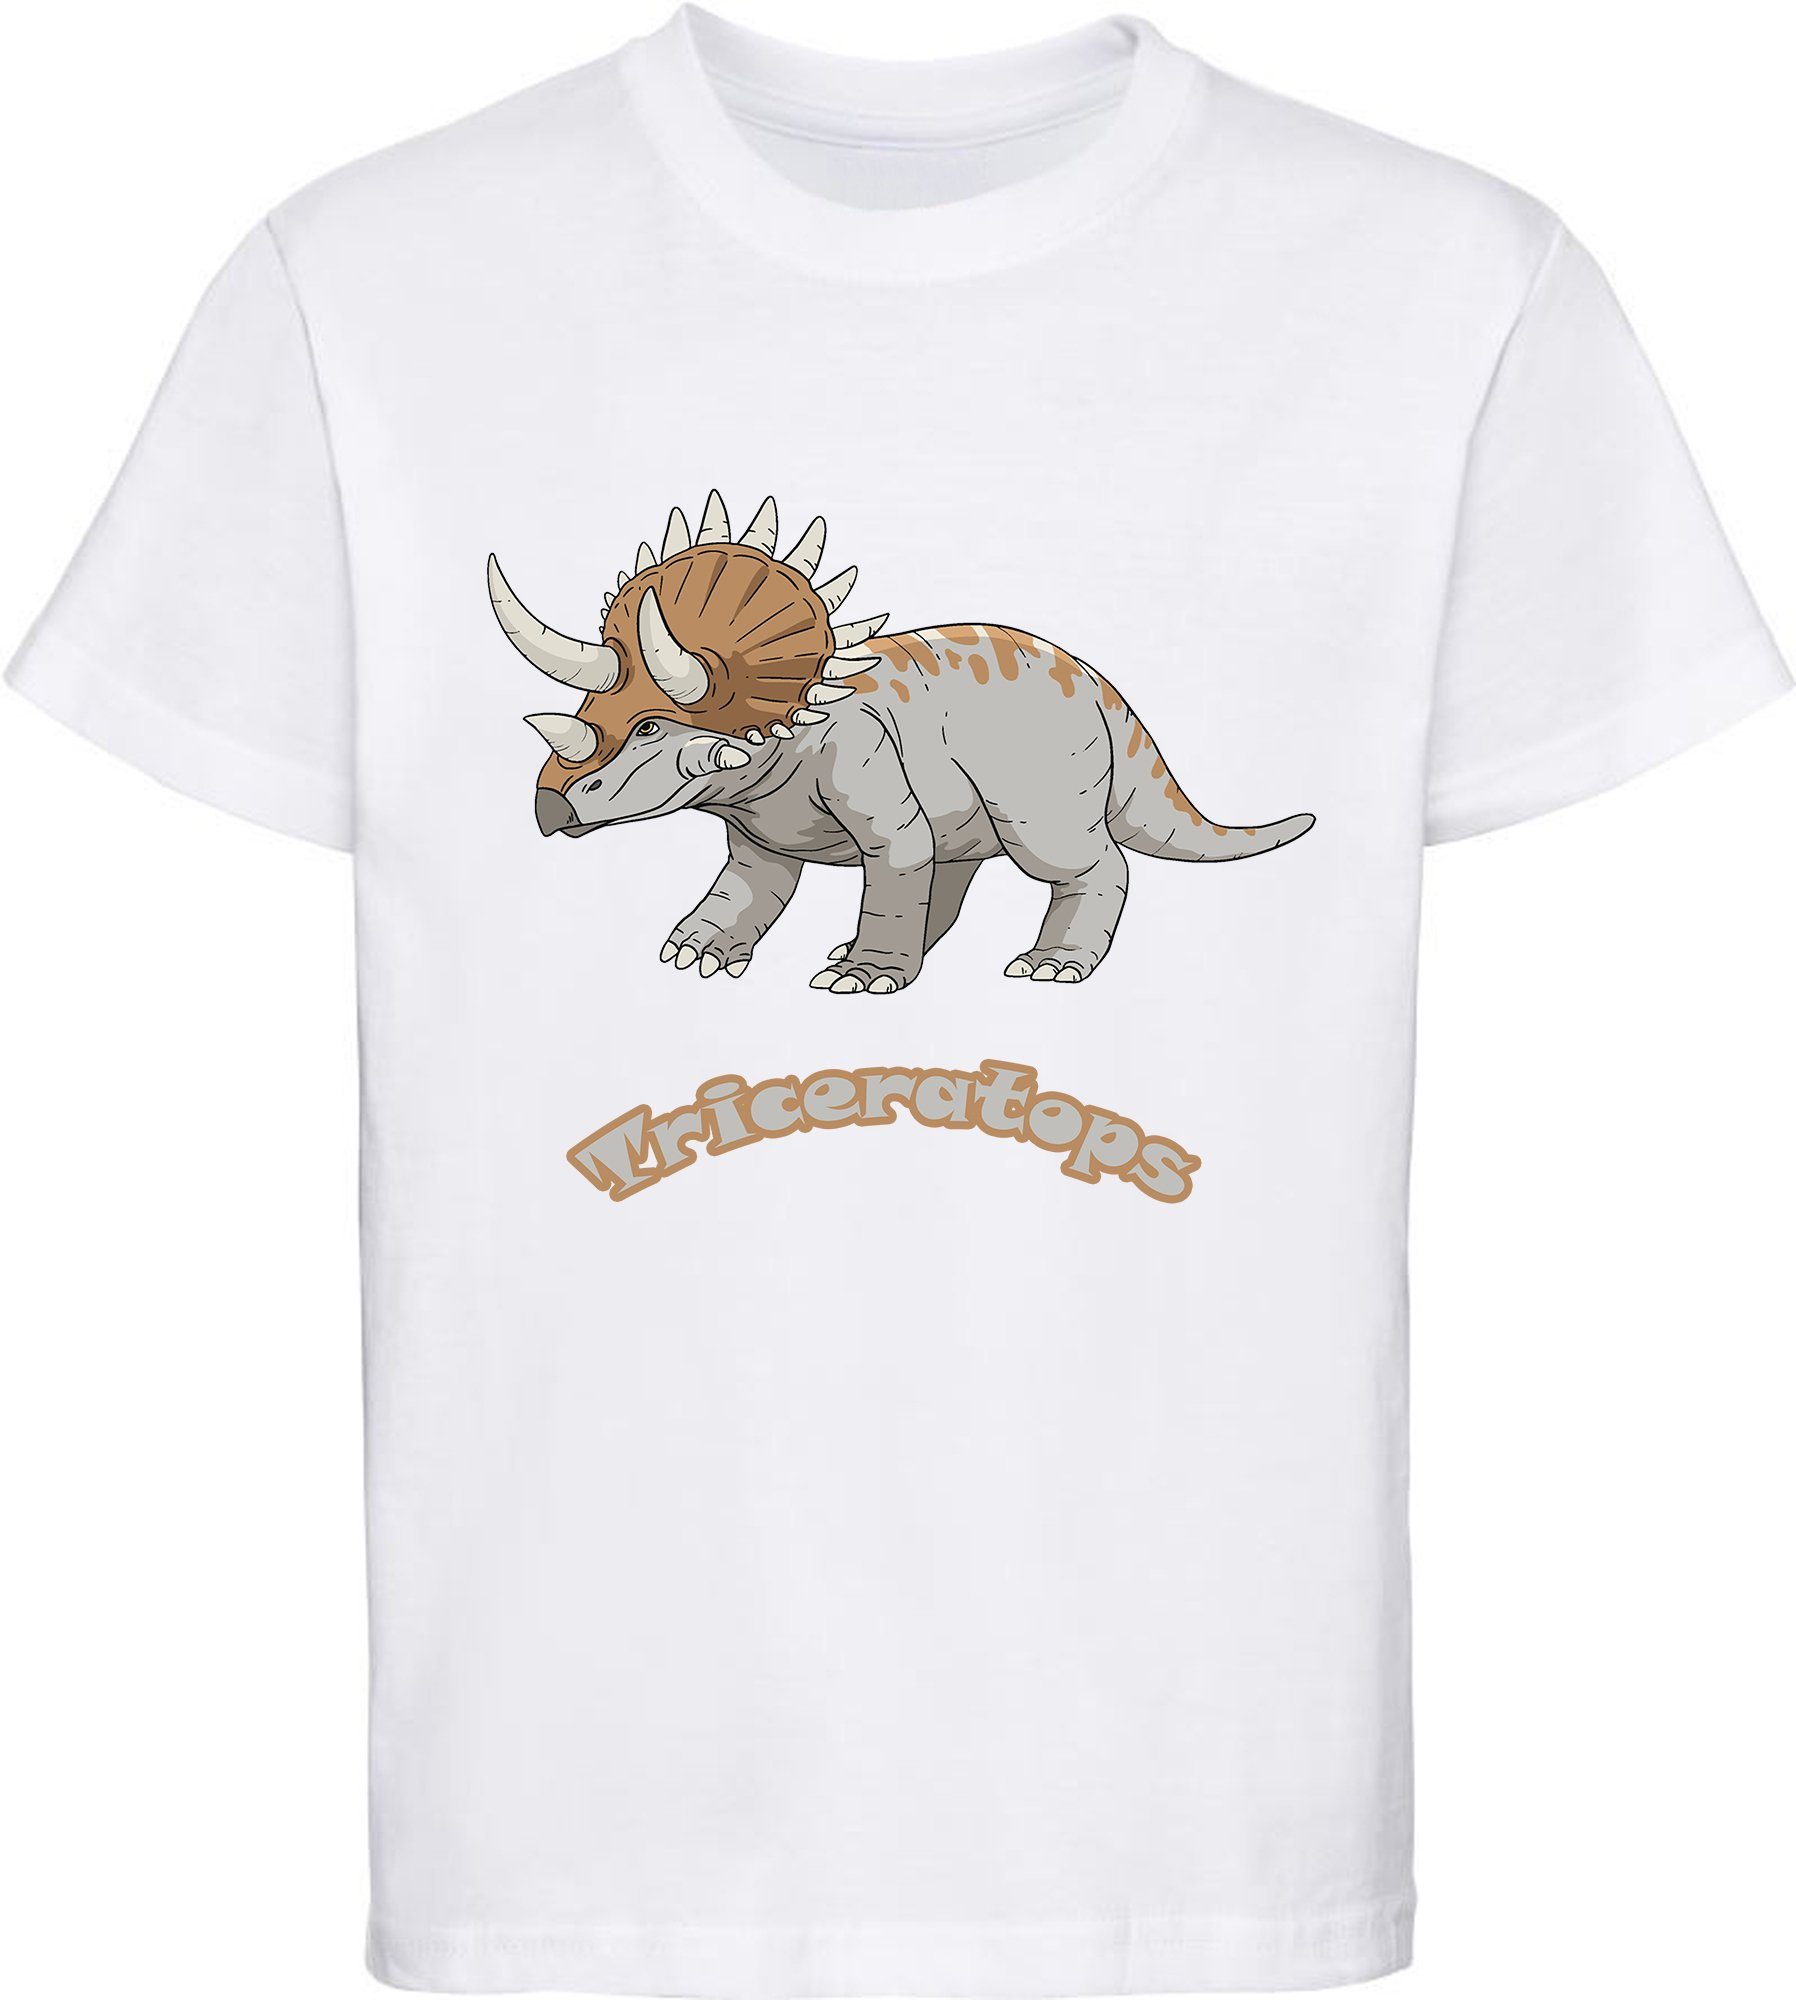 MyDesign24 T-Shirt bedrucktes Kinder T-Shirt mit Triceratops 100% Baumwolle mit Dino Aufdruck, weiss i52